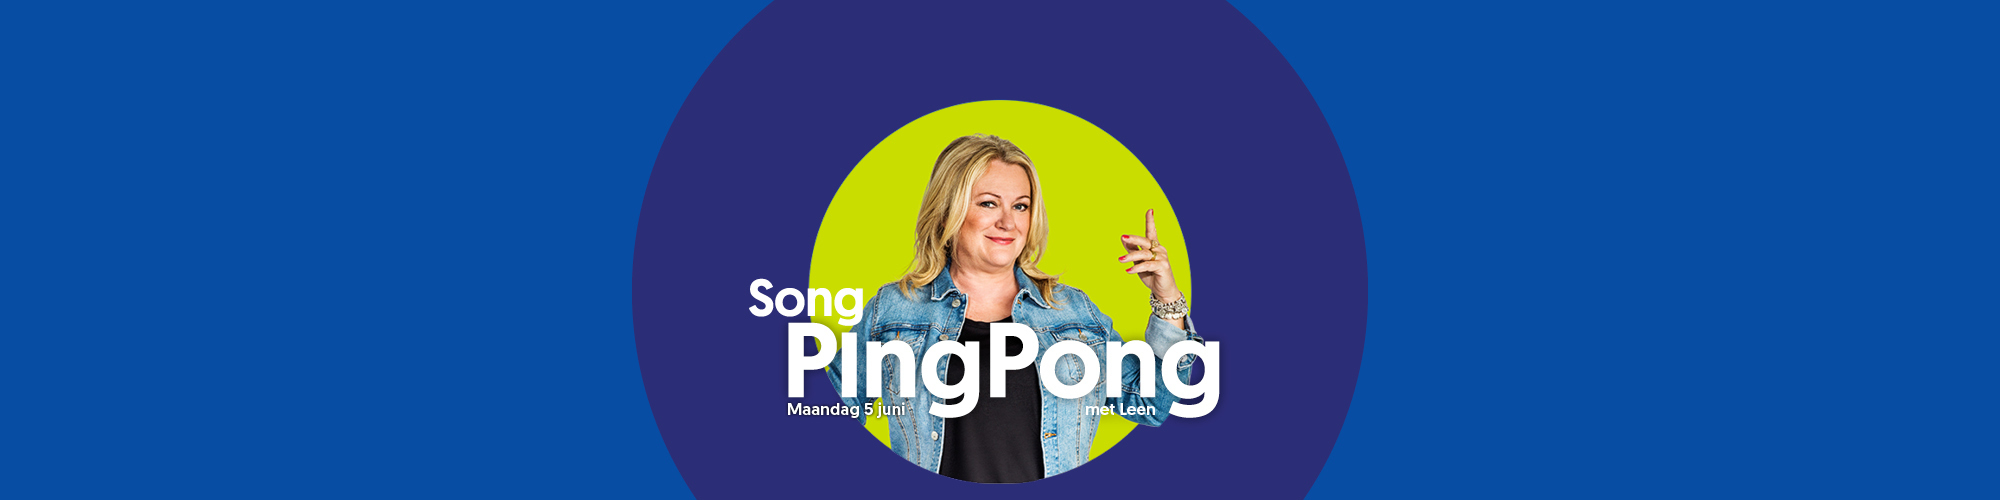 Song ping pong